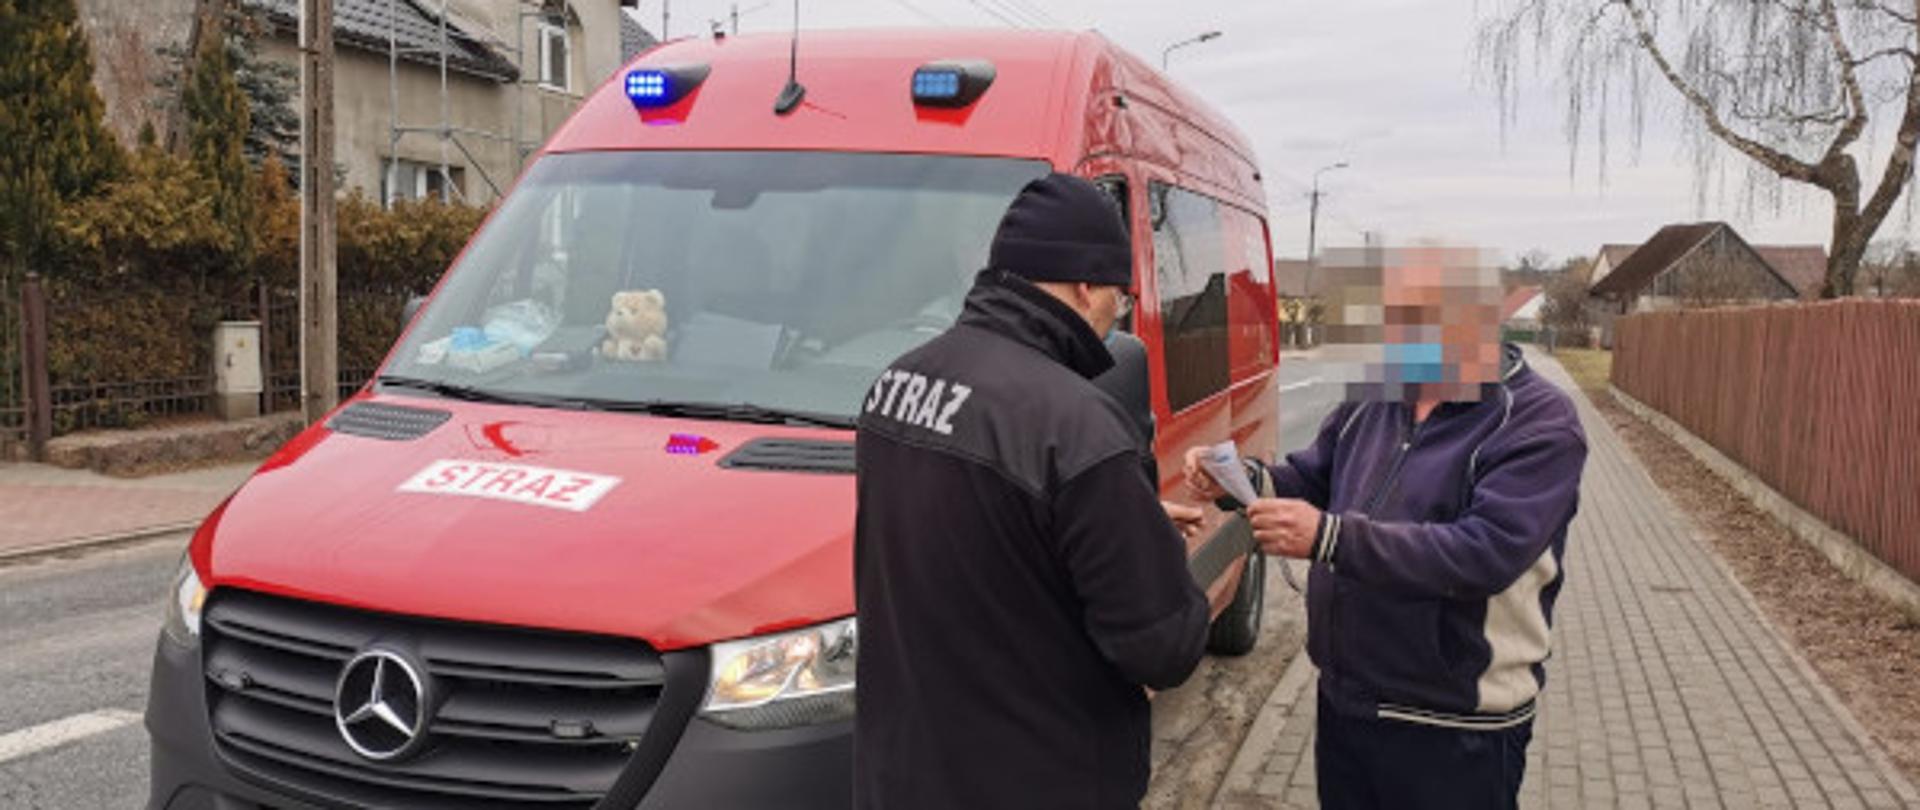 Strażacy z OSP Łubowo w ramach Narodowego Programu „SzczepimySię” prowadzili dystrybucję ulotek